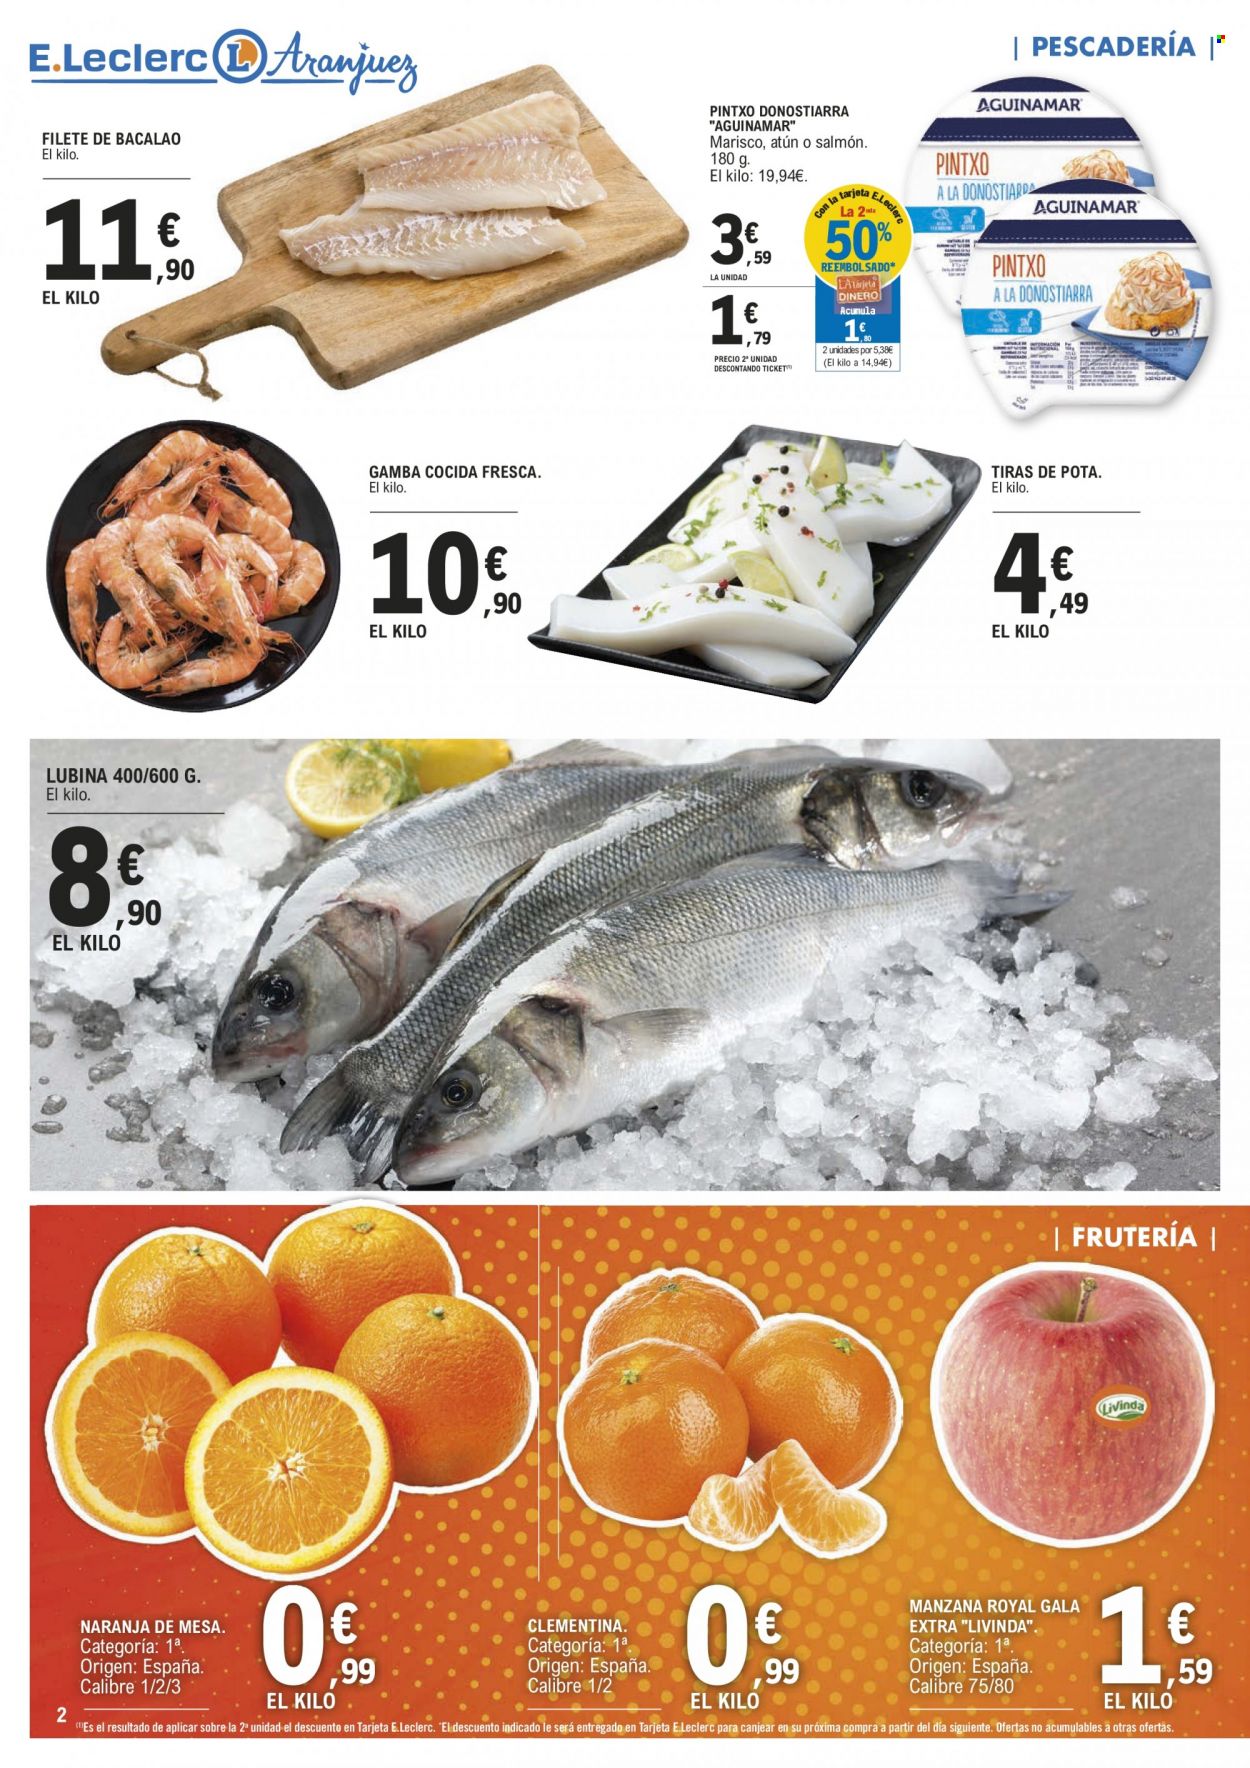 thumbnail - Folleto actual E.Leclerc - 30/11/22 - 11/12/22 - Ventas - bacalao, filete de pescado, pescado, gamba cocida, gambas, mariscos, pota fresca, lubina, naranja, mandarina, manzanas, pintxo. Página 2.